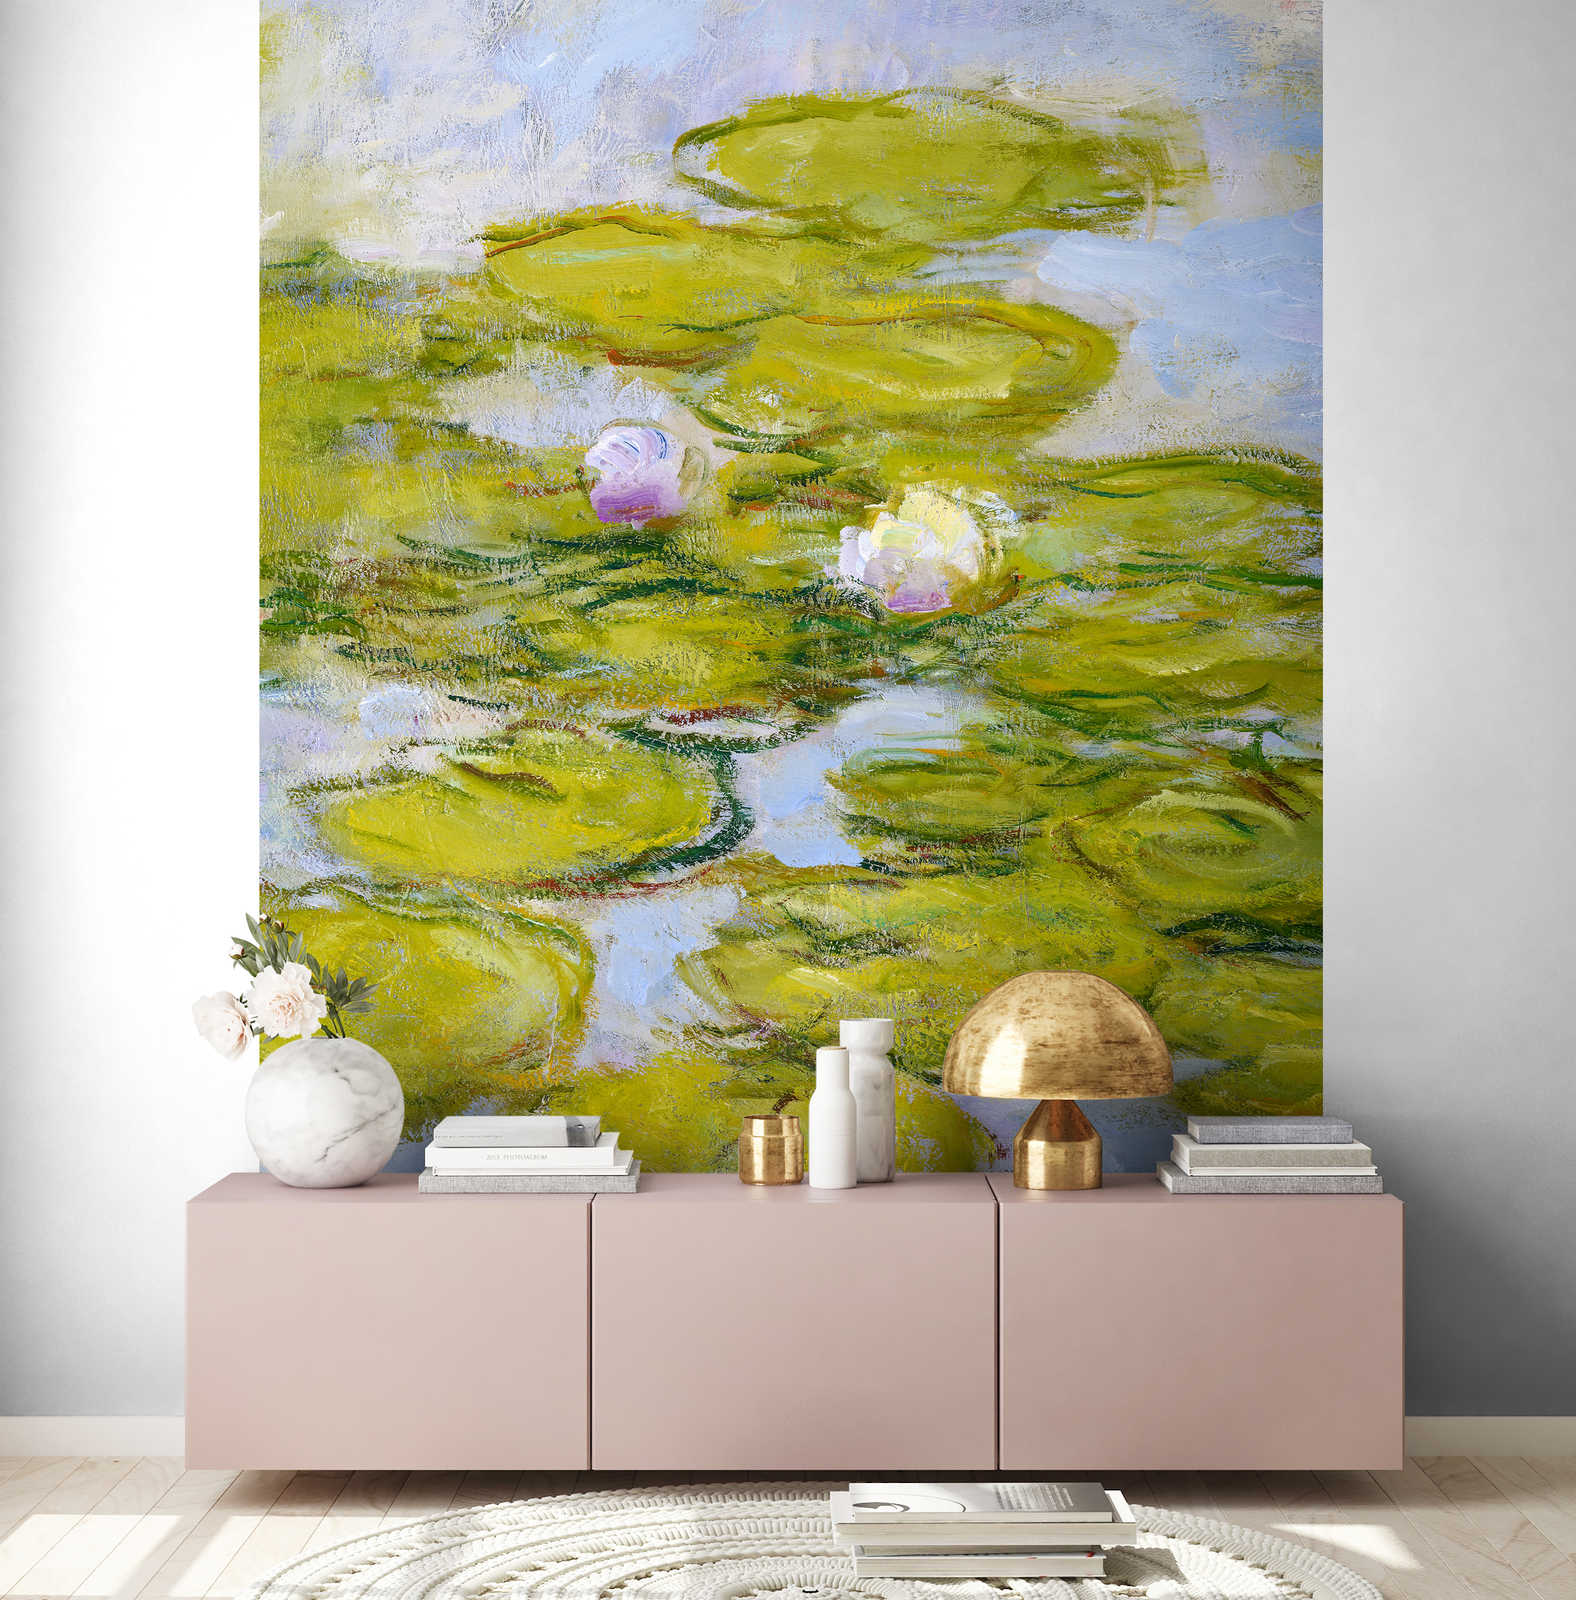             Fotobehang "Nimfen" van Claude Monet
        